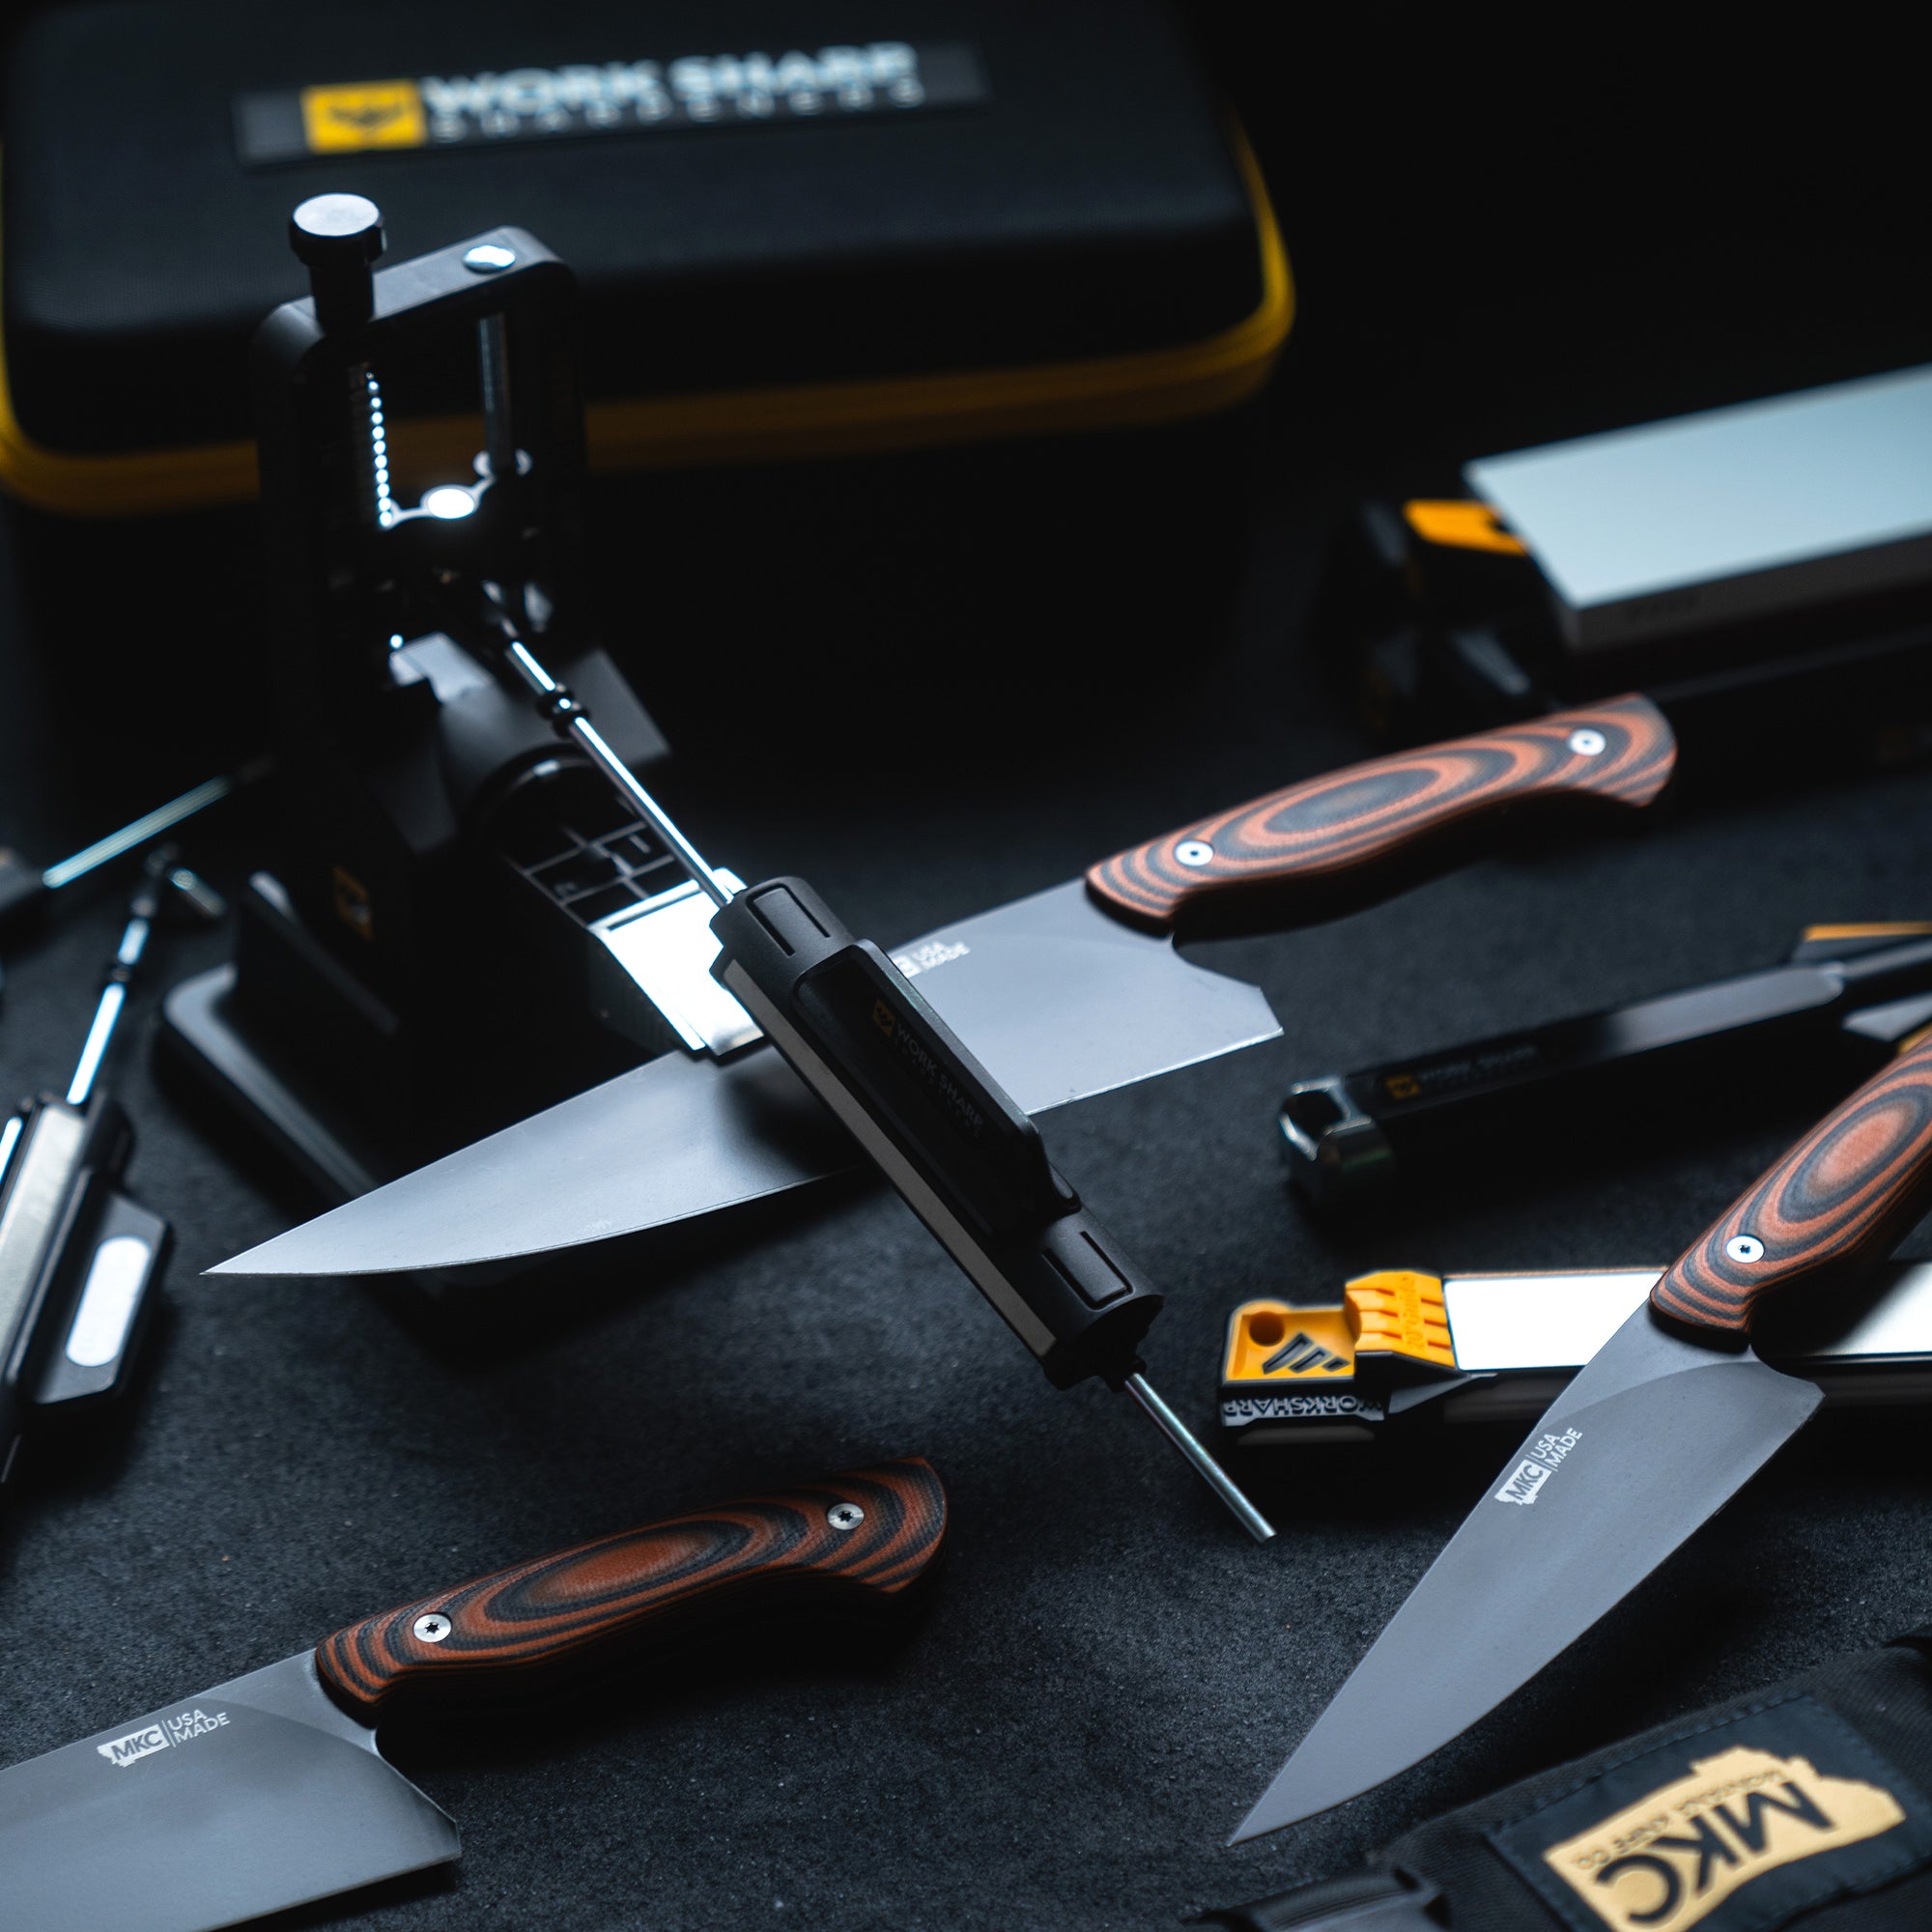 Work Sharp Professional Precision Adjust Knife Sharpener Tool, complete  angle adjustable knife sharpening system